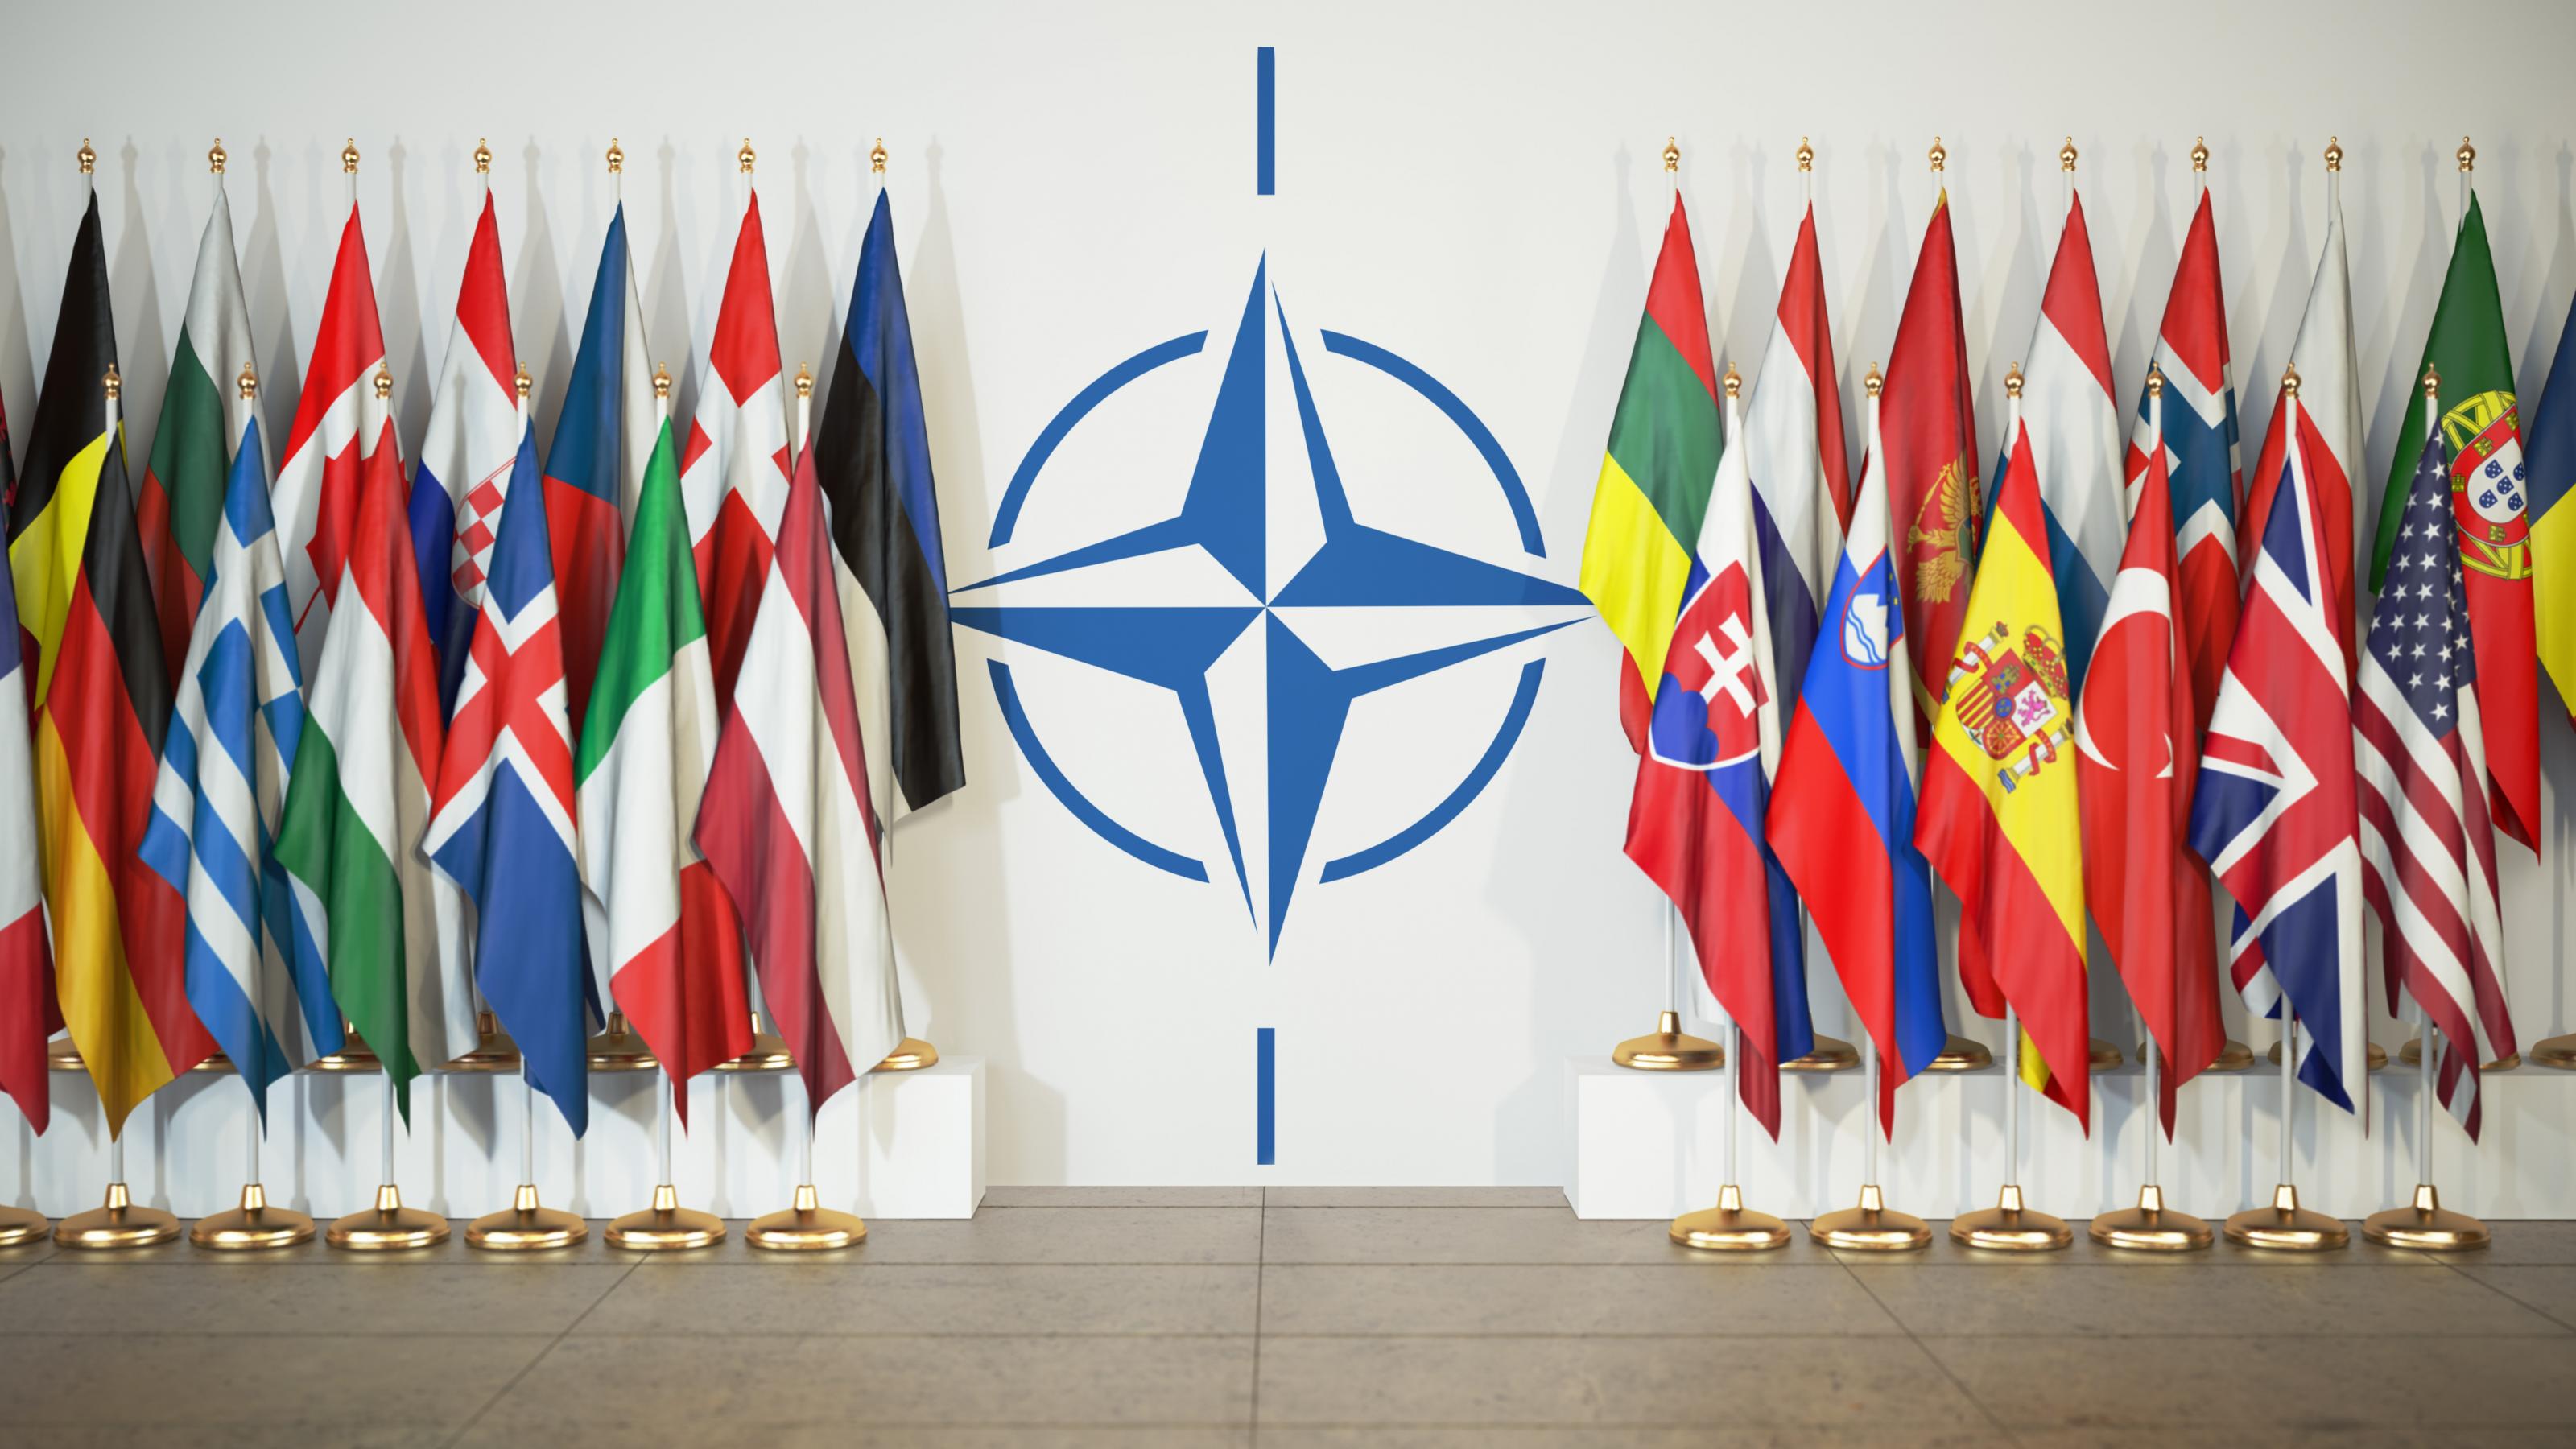 Rechts und links des NATO-Symbols sind die Fahnen der Mitgliedsstaaten zu sehen.